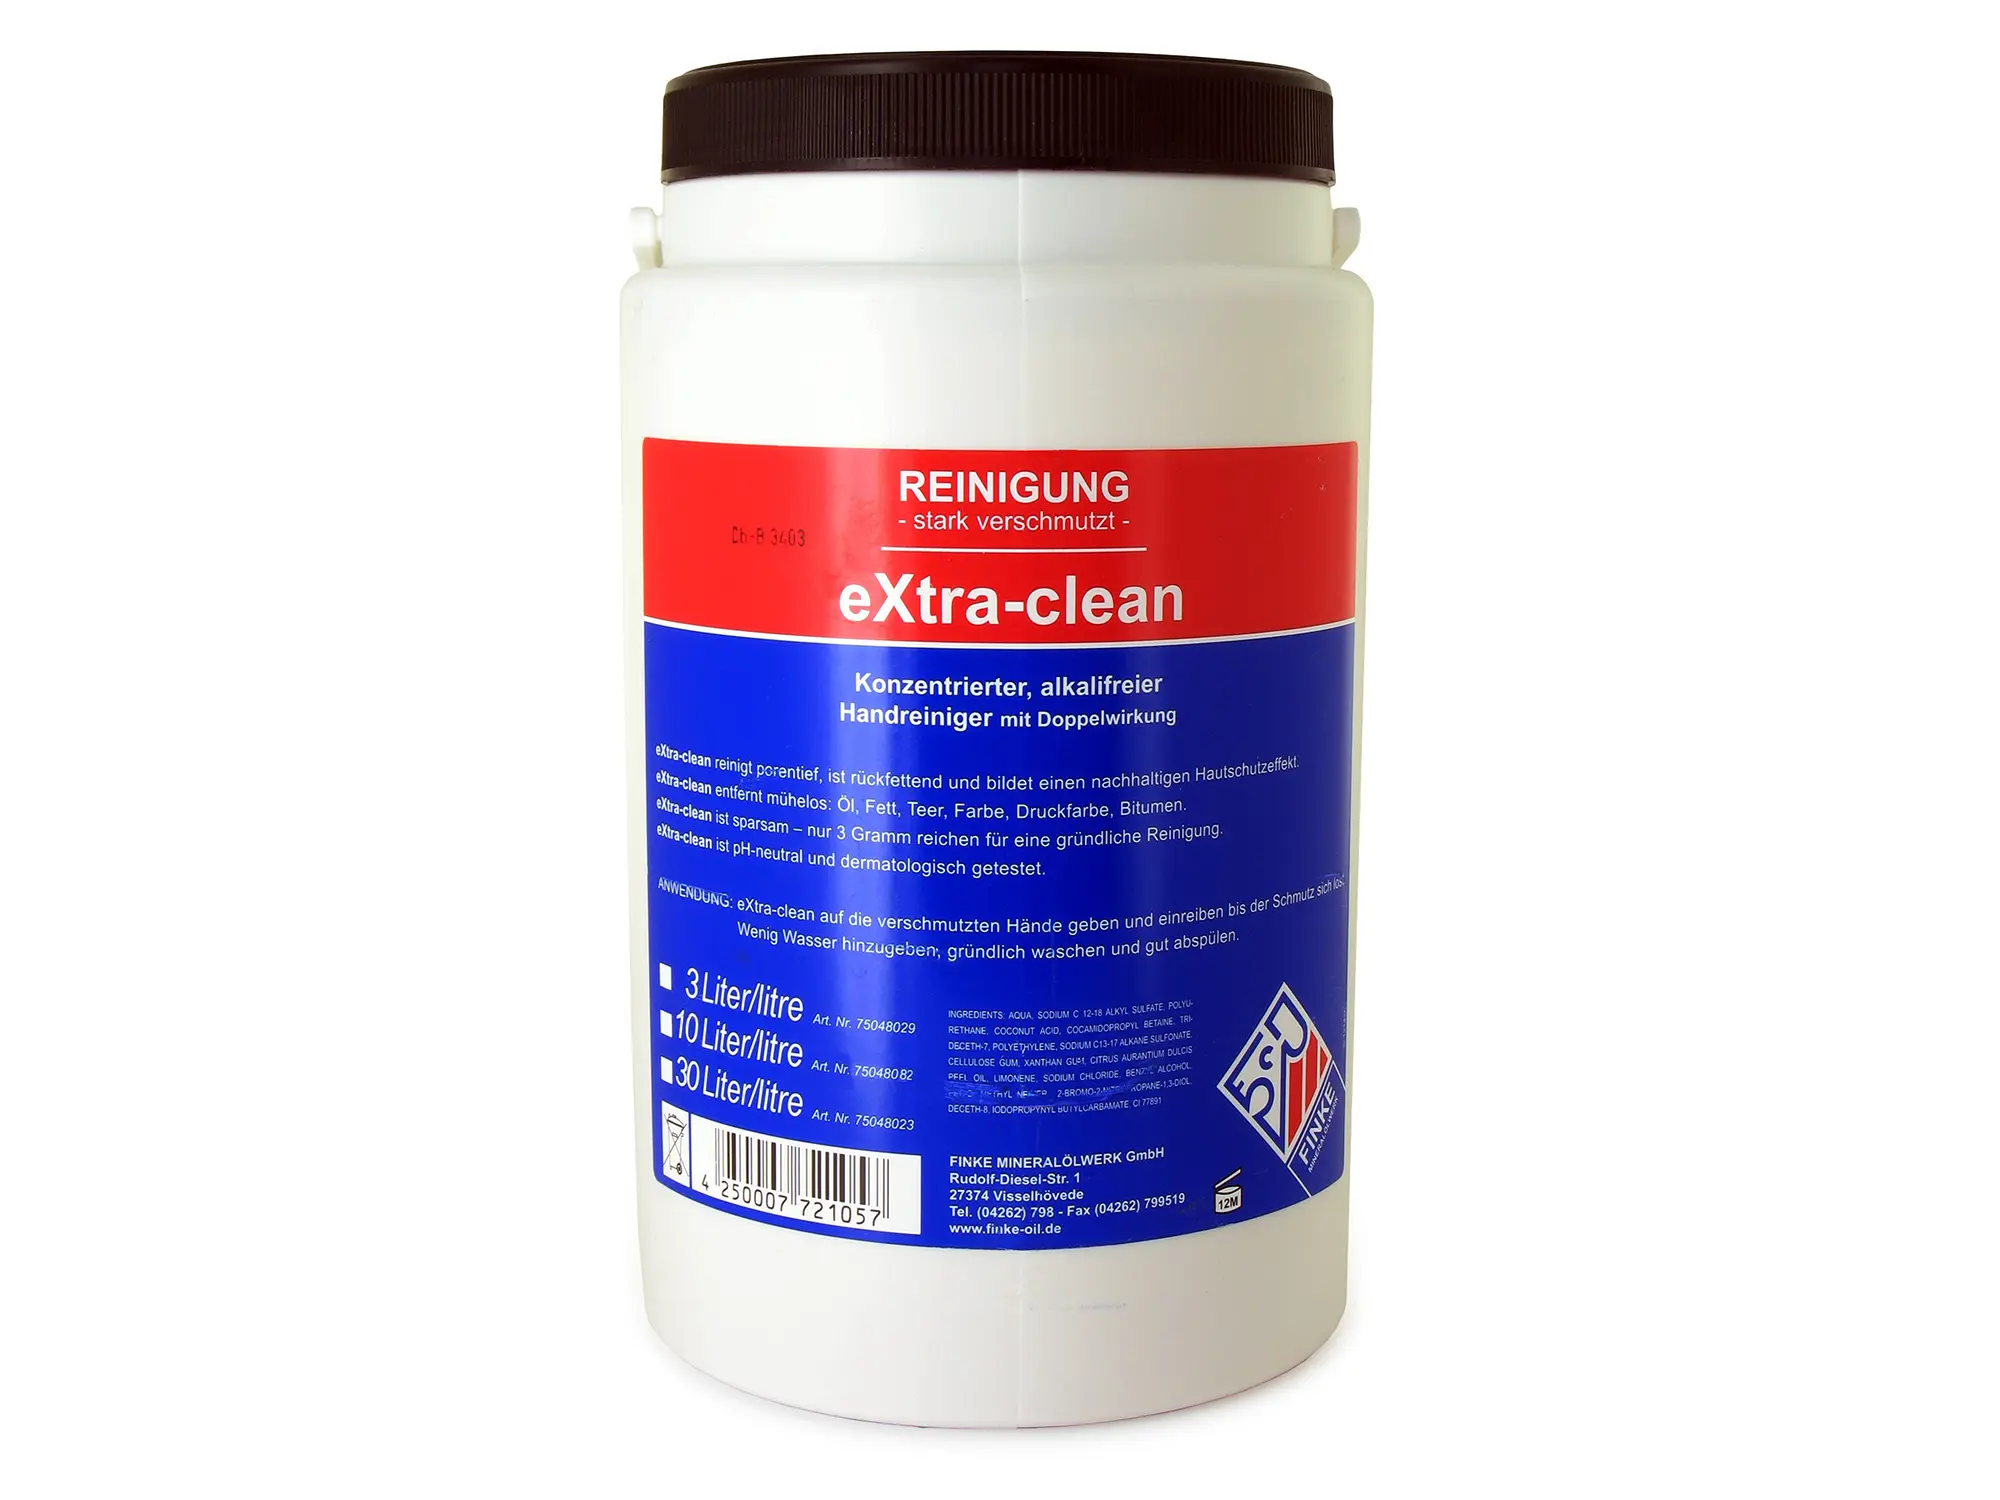 Handreiniger+ Hautschutz (Handwaschpaste) Aviatiocon -Extra Clean- 3 Liter, Art.-Nr.: 10059151 - Bild 1